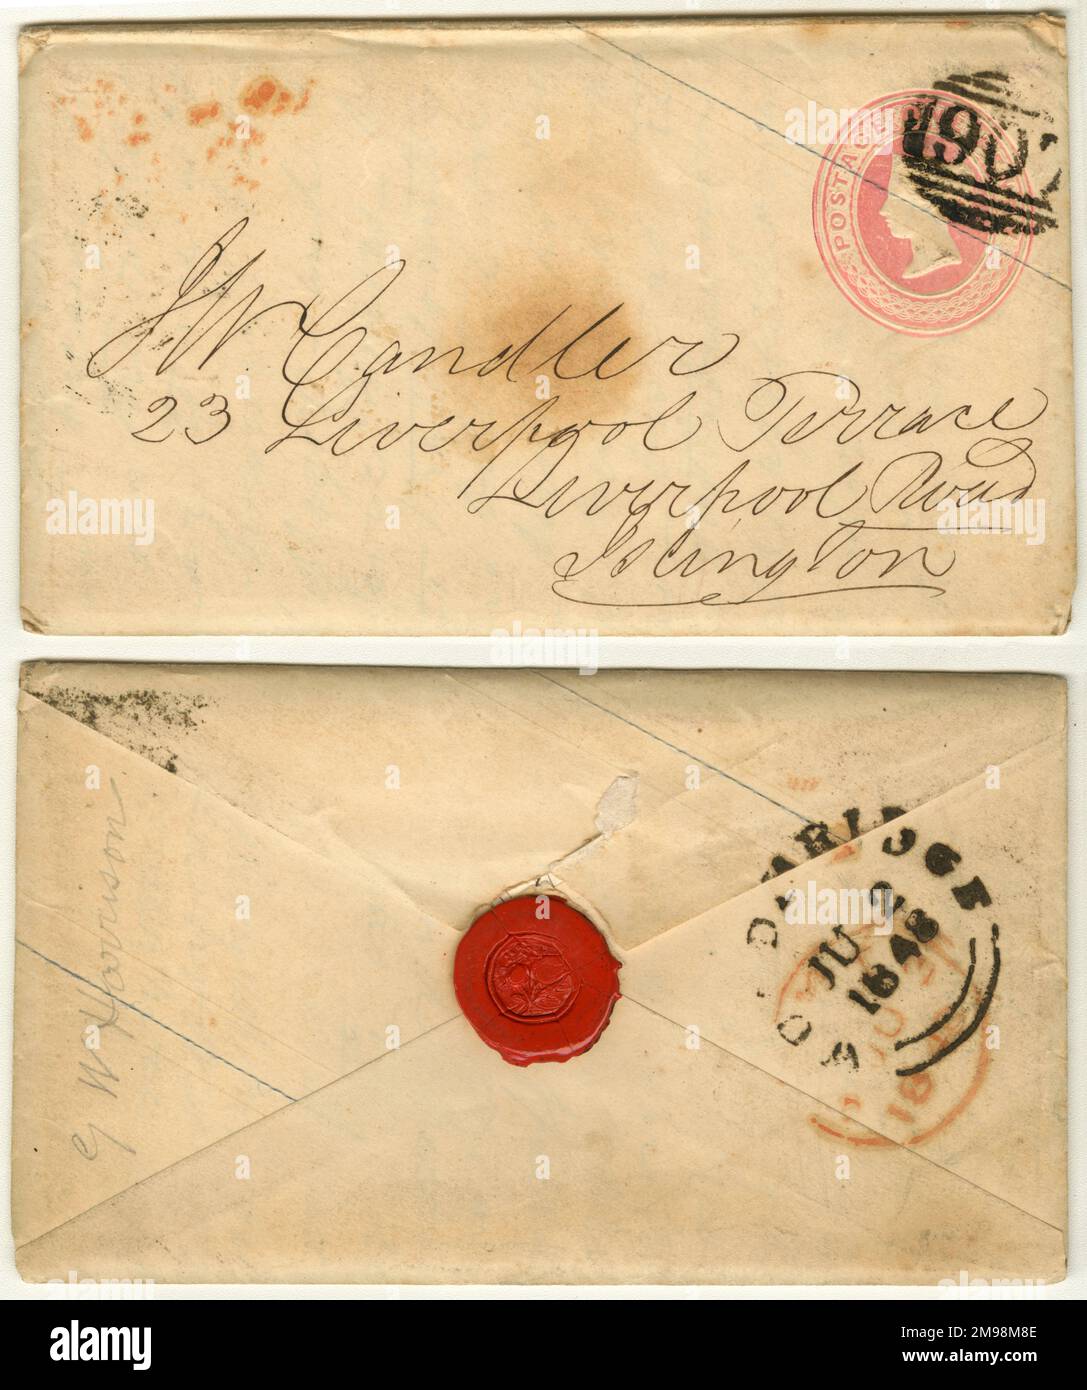 Umschlag mit Siegelwachs aus Woodbridge, Suffolk, Datum: 2. Juni 1848, adressiert an J W Candler, 23 Liverpool Terrace, Liverpool Road, Islington, North London, Mit einer Prägung von Queen Victoria für einen Penny. Stockfoto